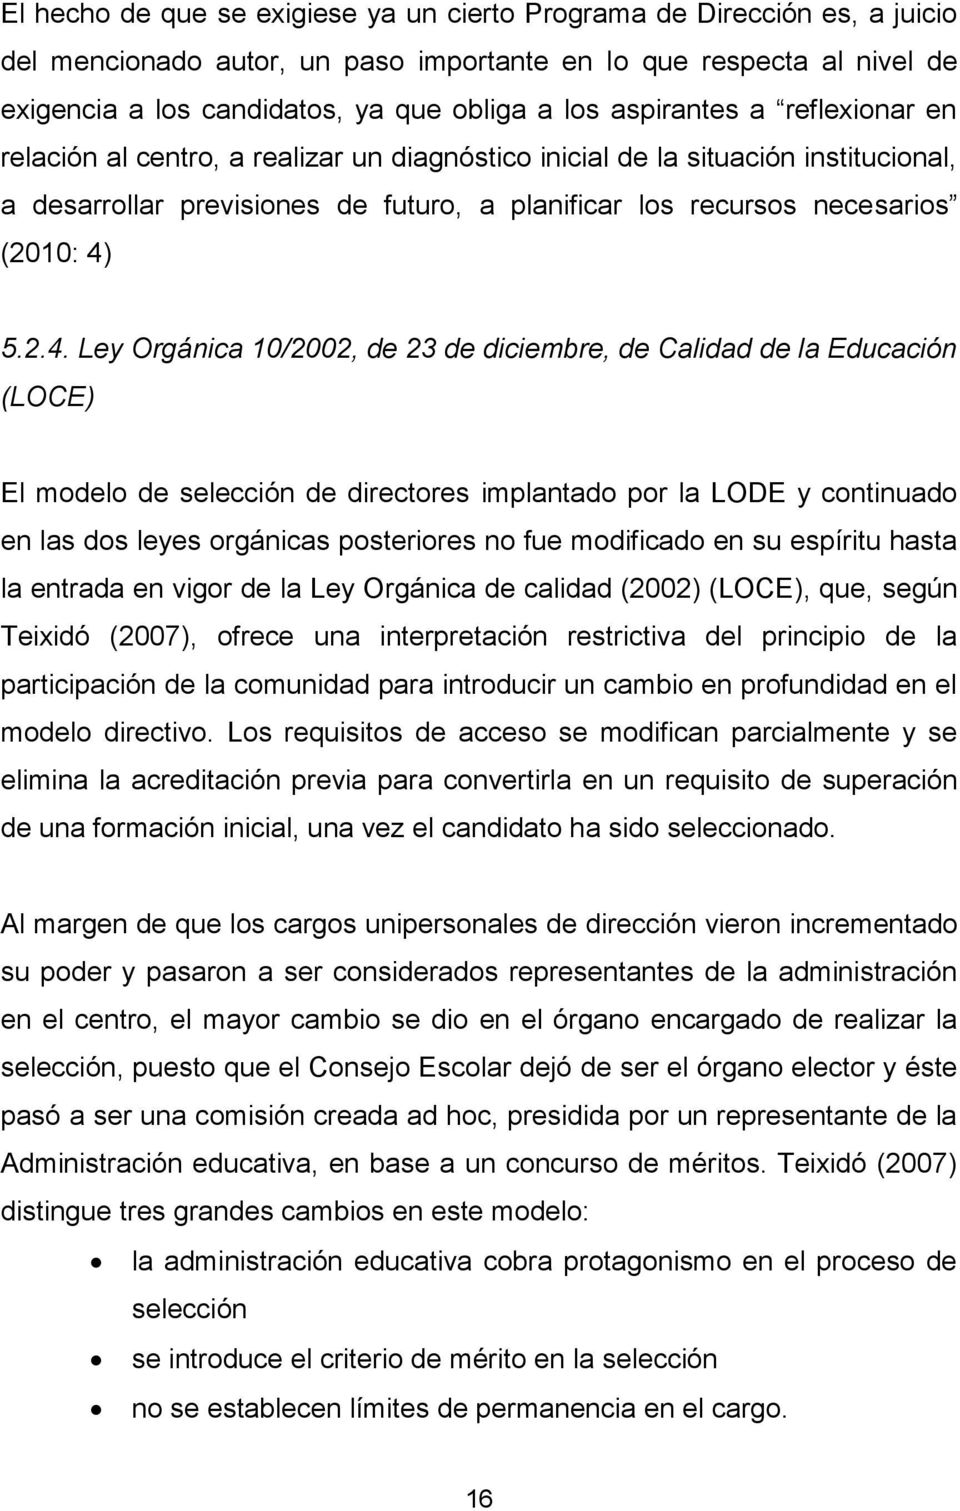 2.4. Ley Orgánica 10/2002, de 23 de diciembre, de Calidad de la Educación (LOCE) El modelo de selección de directores implantado por la LODE y continuado en las dos leyes orgánicas posteriores no fue